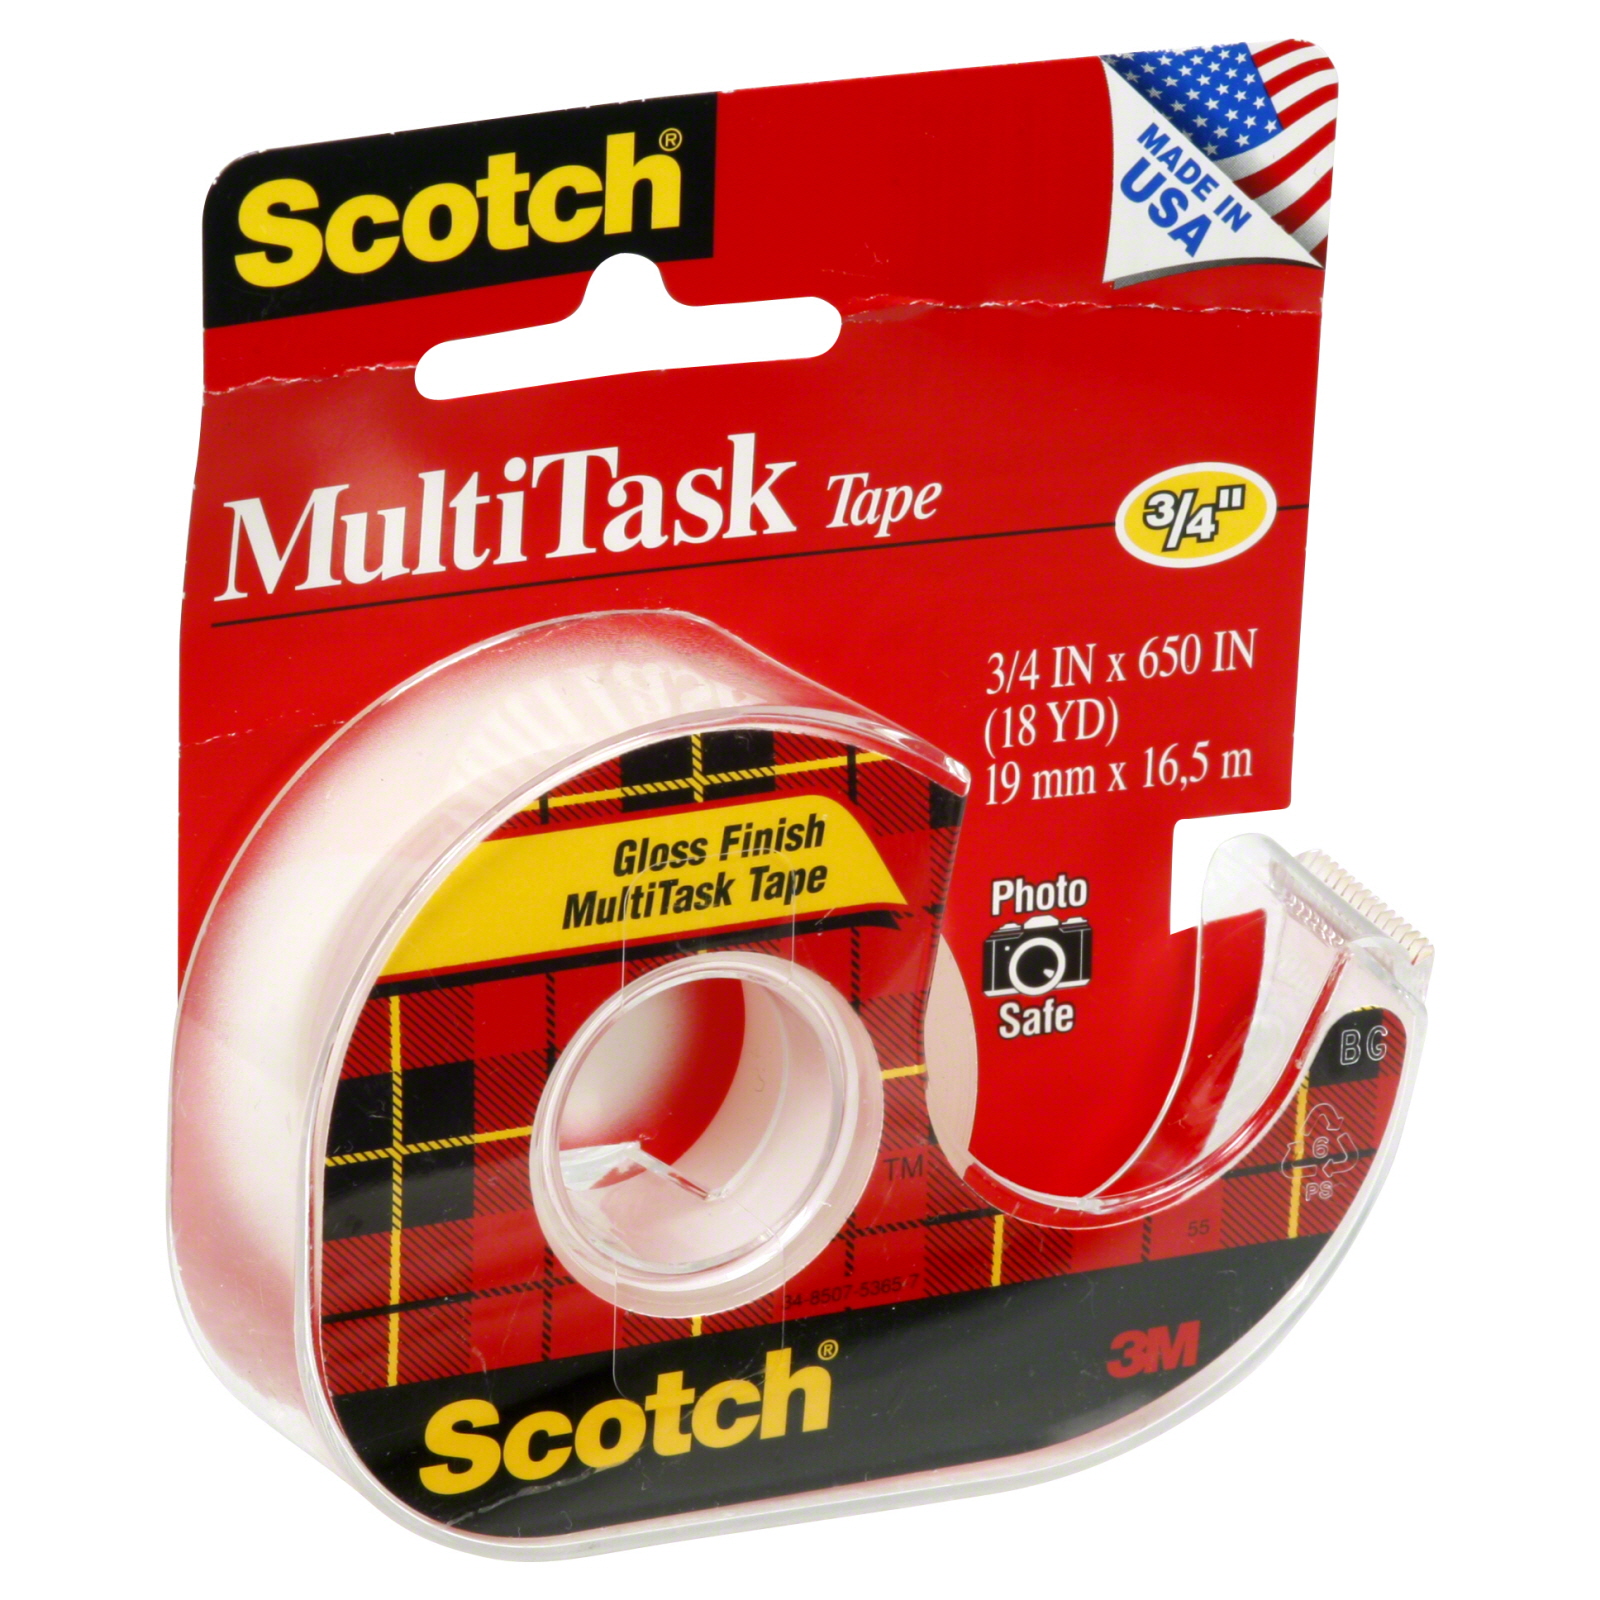 Scotch 25276711 Multi Task Tape, 3/4 Inch, 1 roll